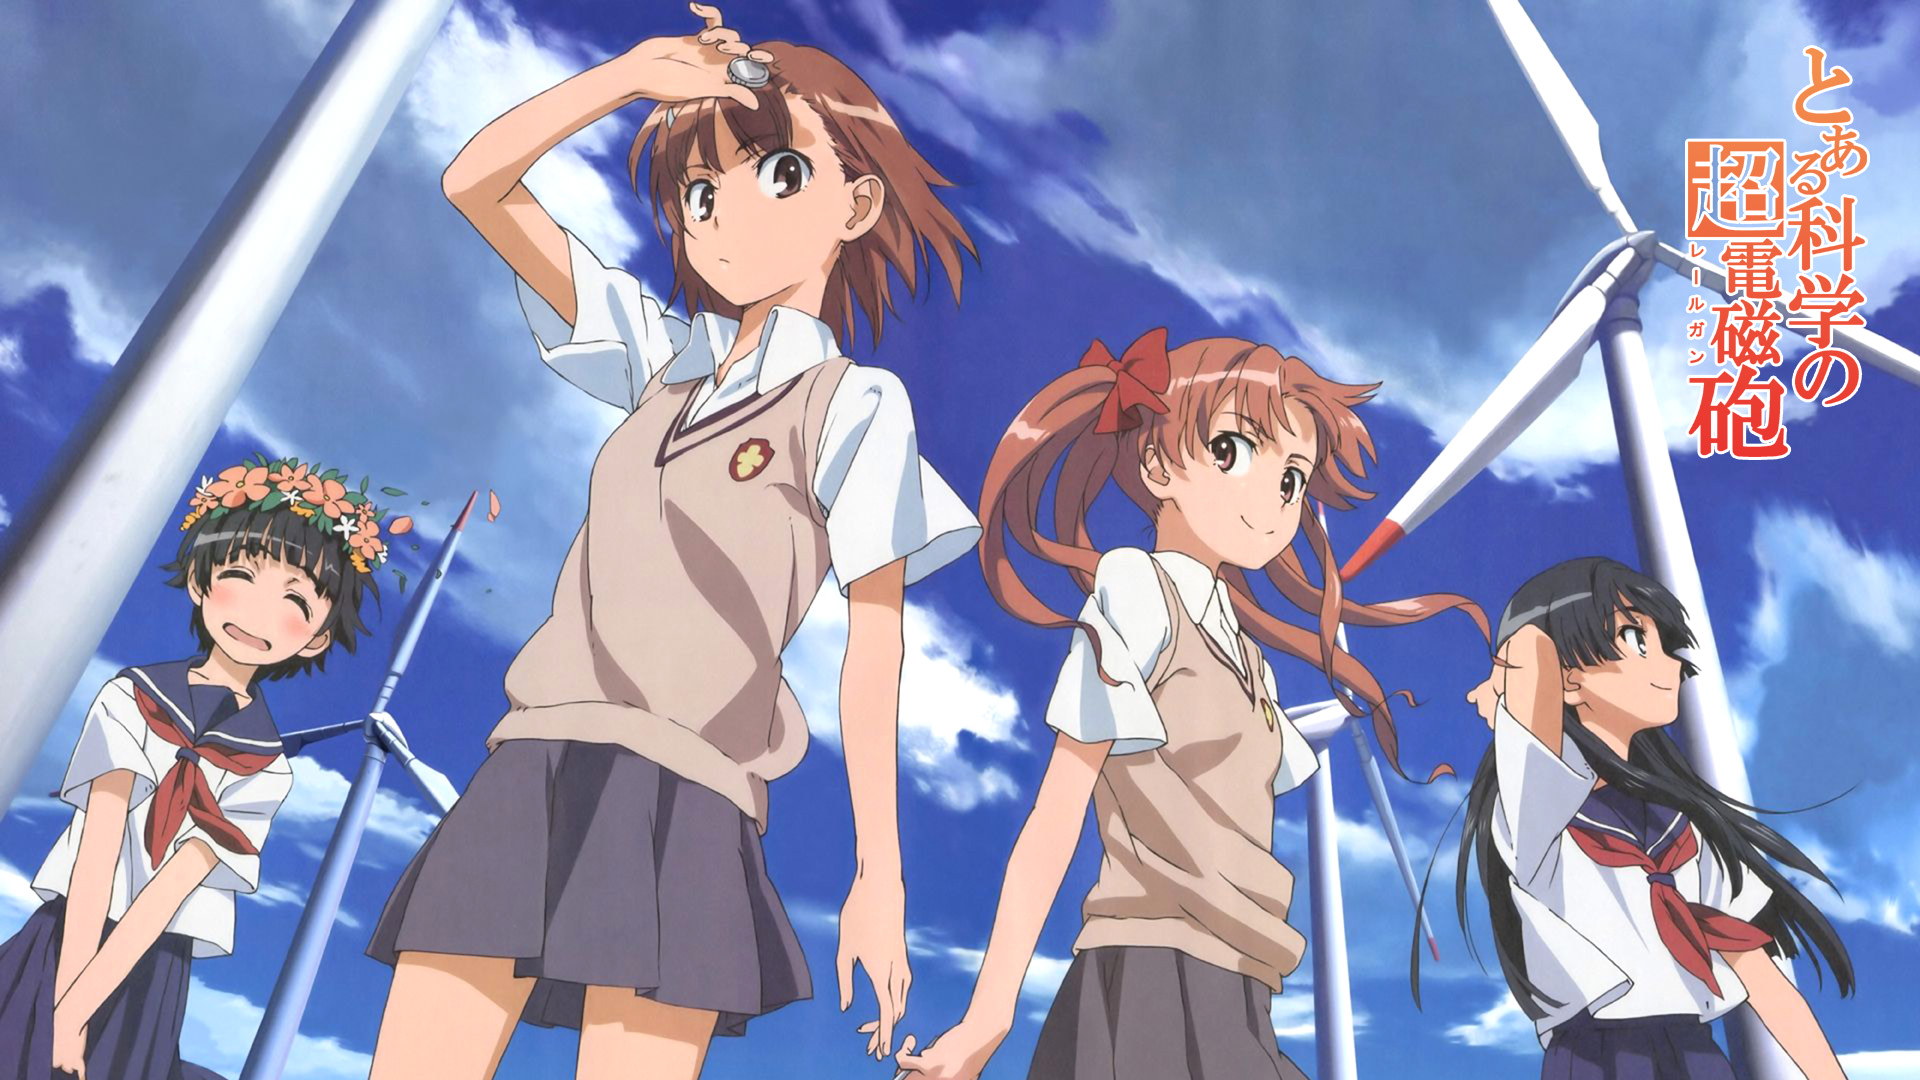 school uniforms, Misaka Mikoto, Toaru Kagaku no Railgun, Uiharu Kazari, Shirai Kuroko, sailor uniforms, Saten Ruiko - desktop wallpaper